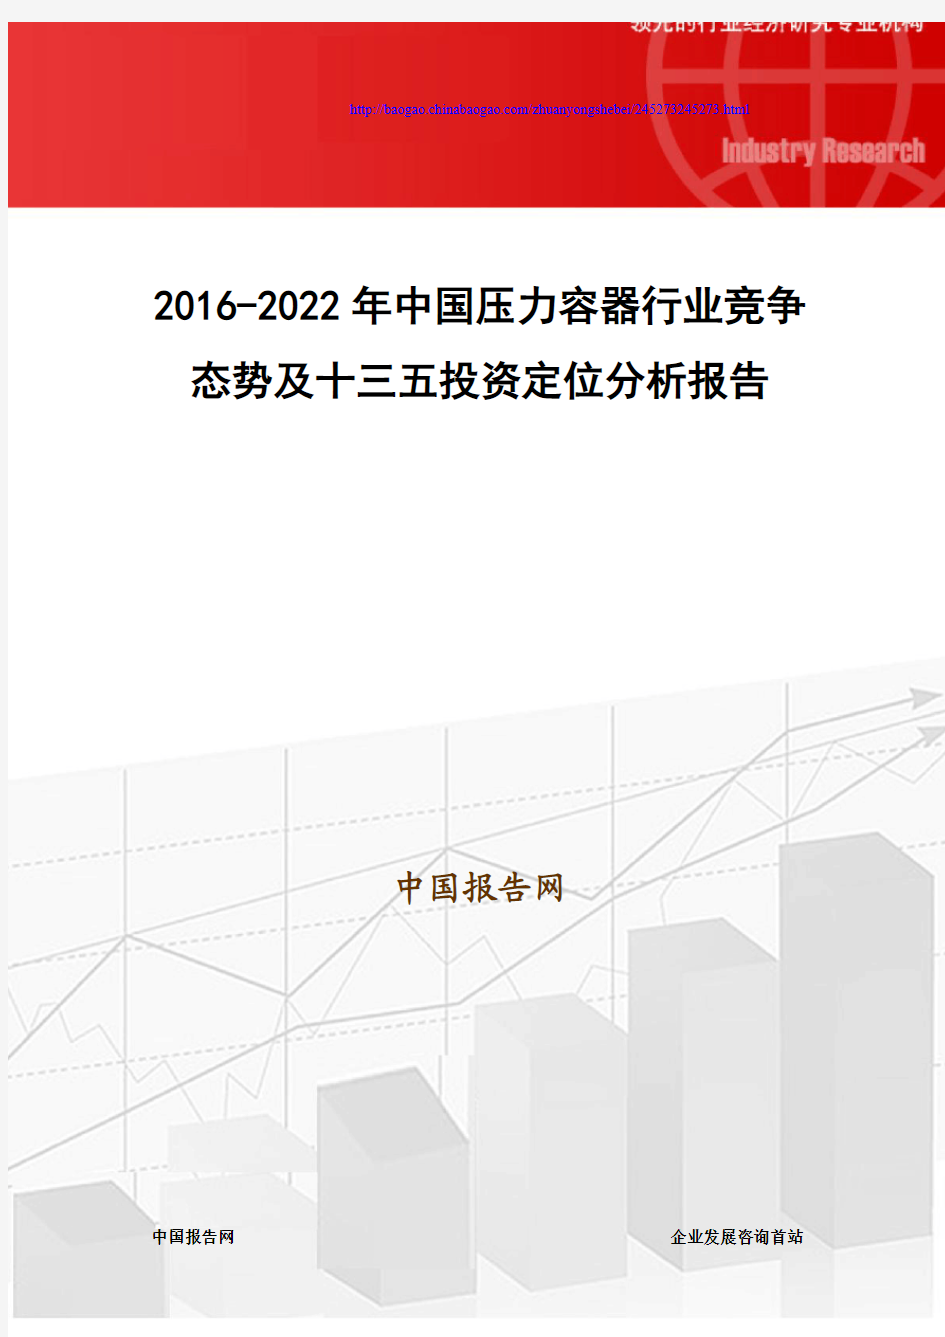 2016-2022年中国压力容器行业竞争态势及十三五投资定位分析报告